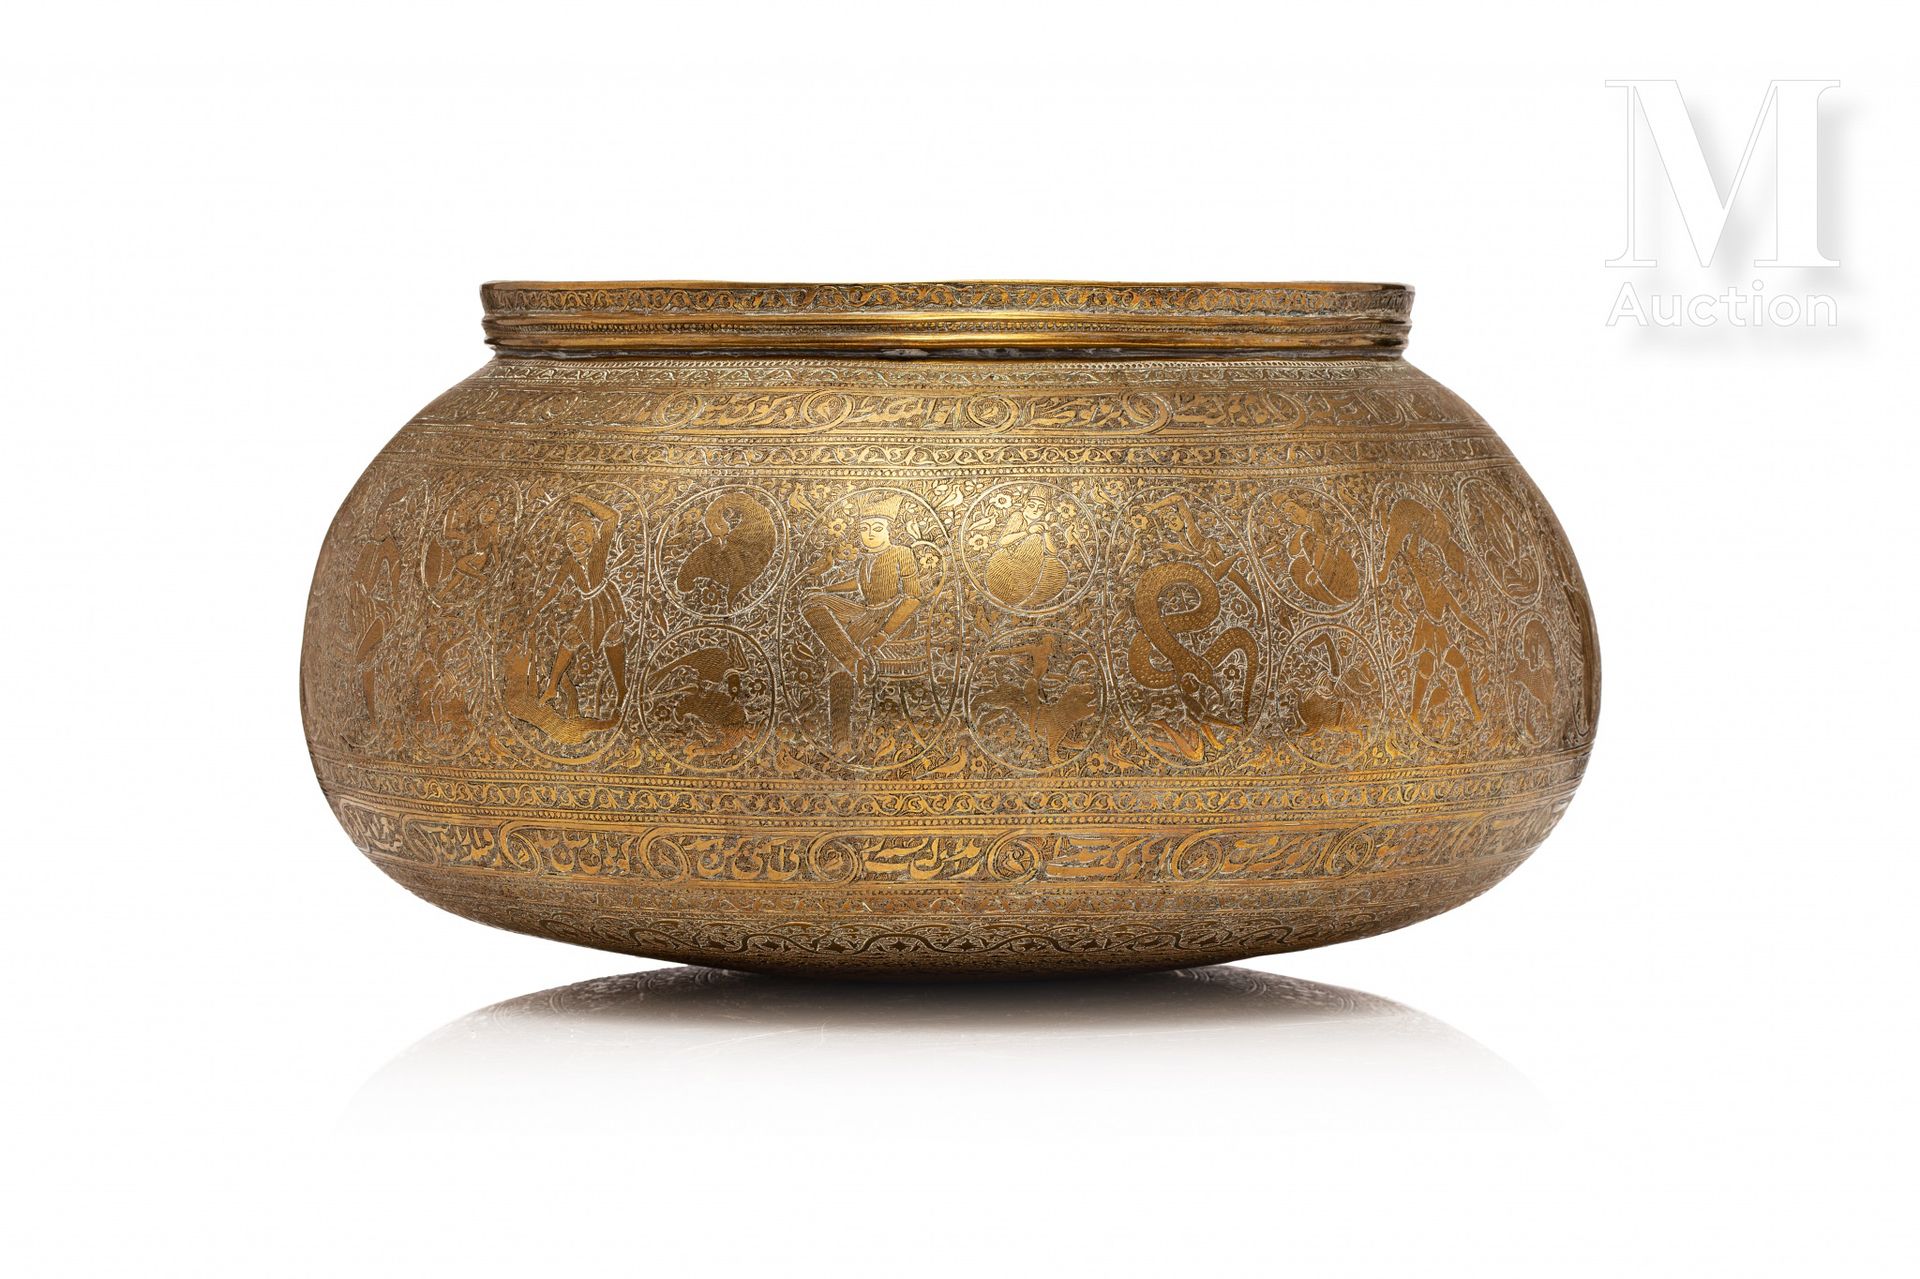 Tâs - Bassin qajar Irán, alrededor de 1860-1880

Vasija de cobre muy finamente c&hellip;